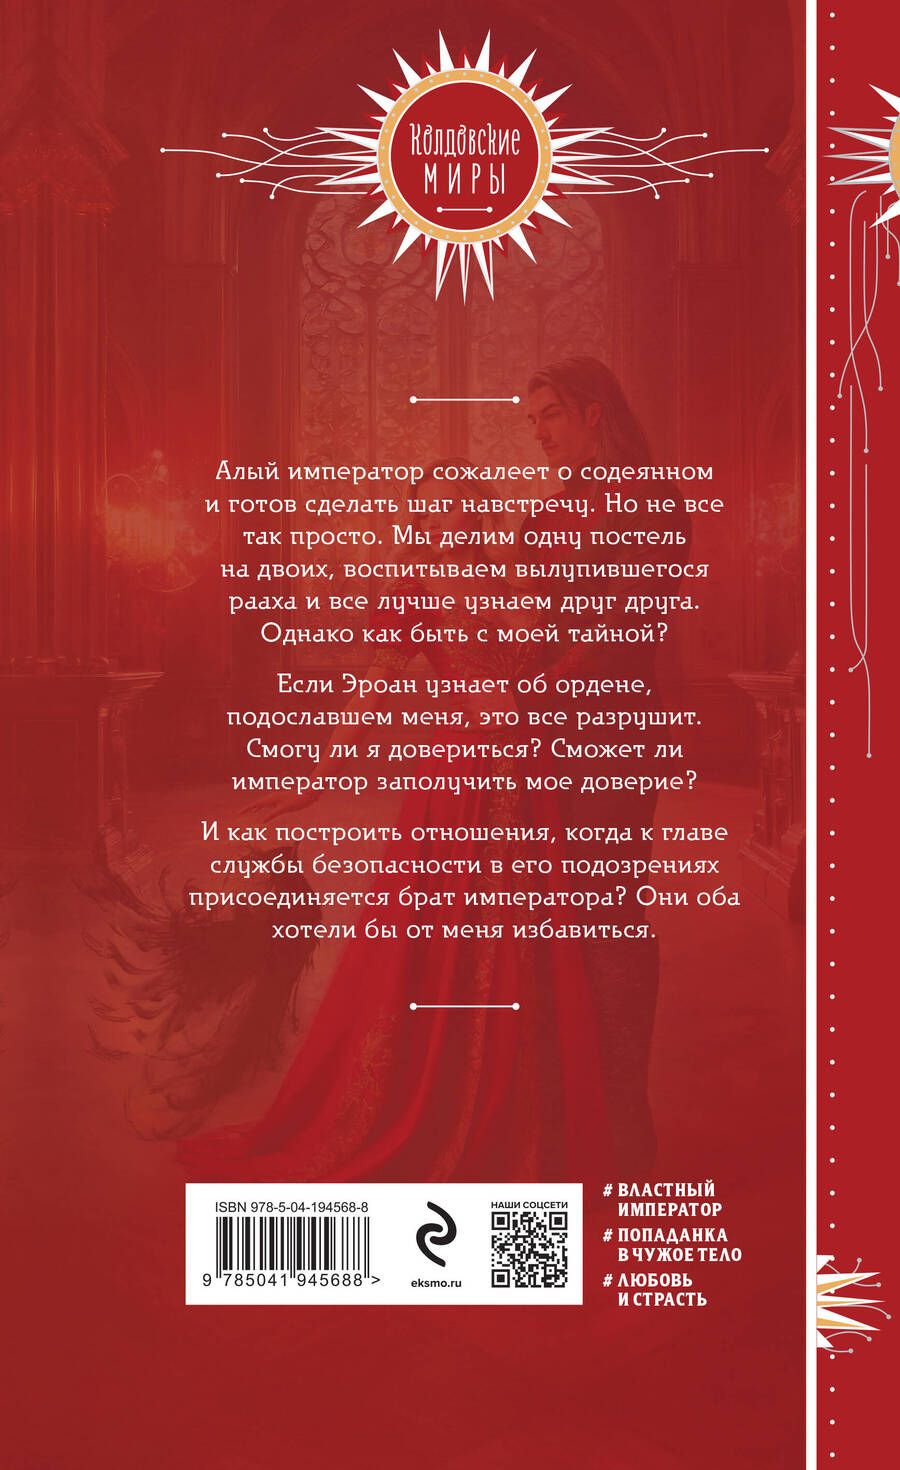 Обложка книги "Мария Боталова: Невеста алого императора"